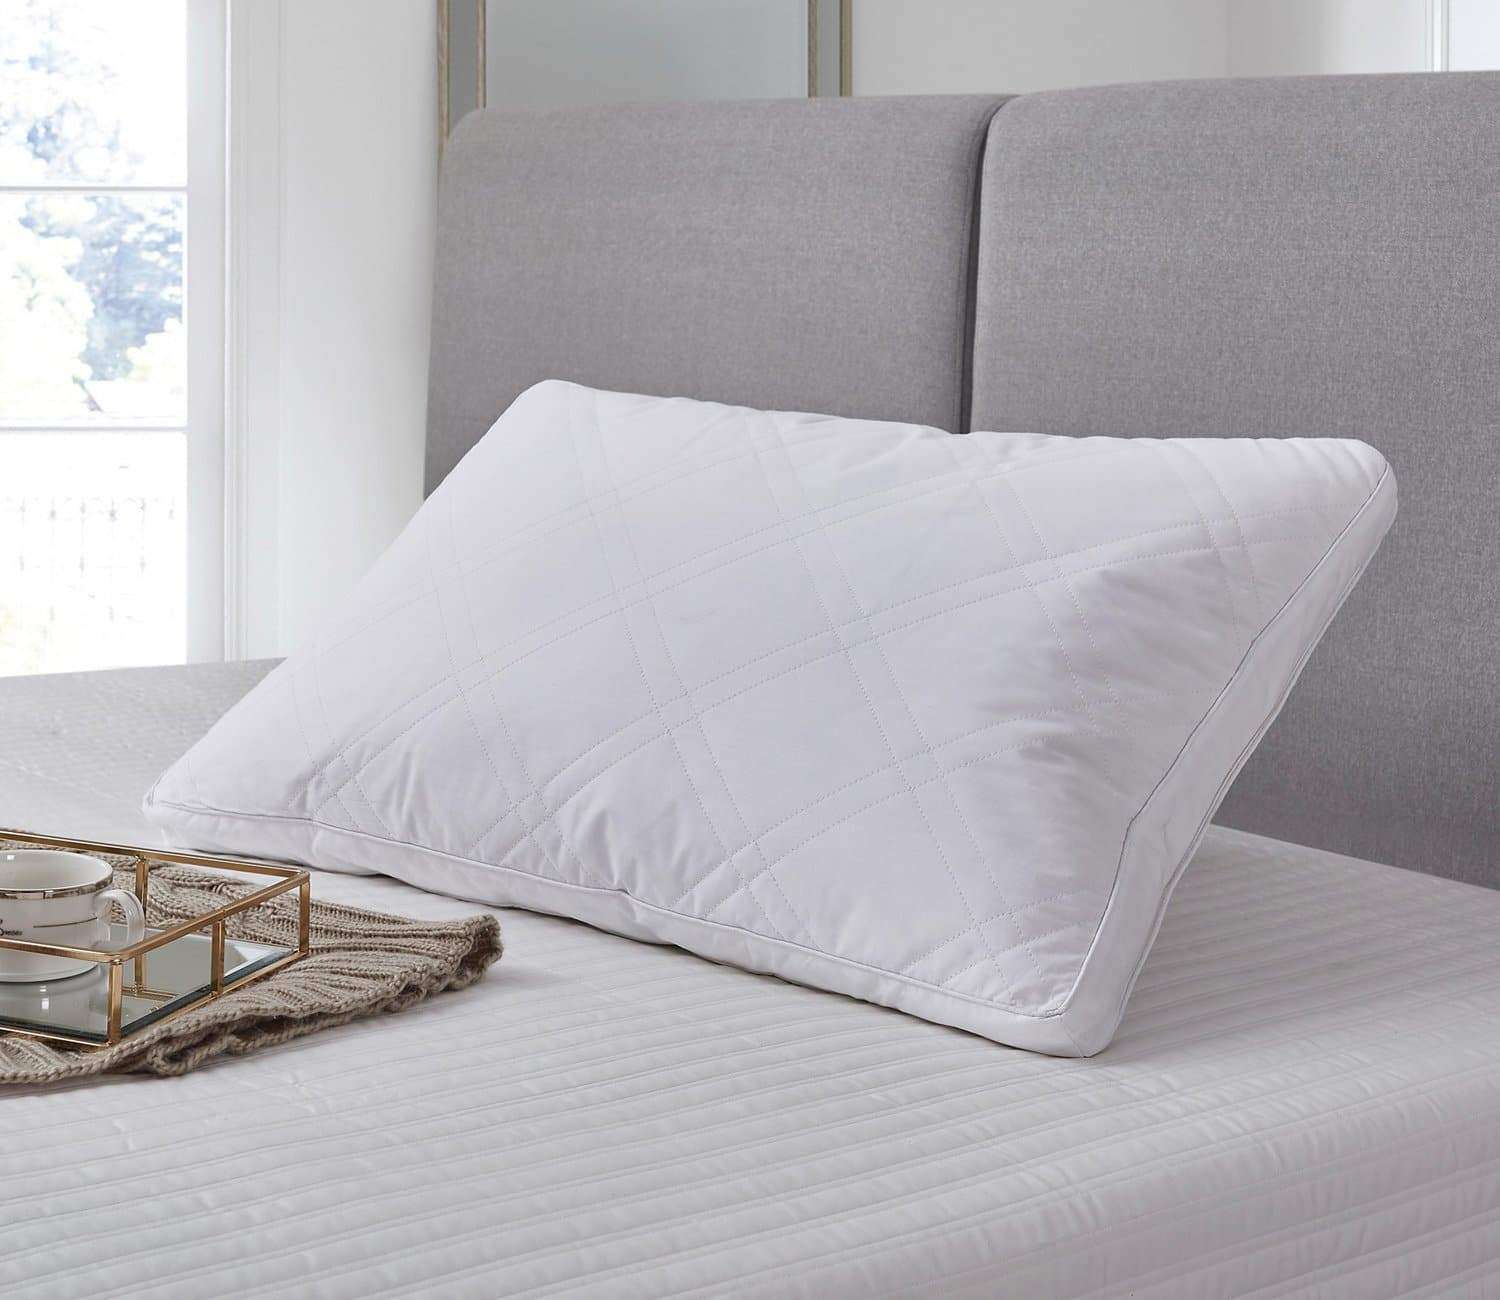 Clearance Pillows – Blue Ridge Home Fashions